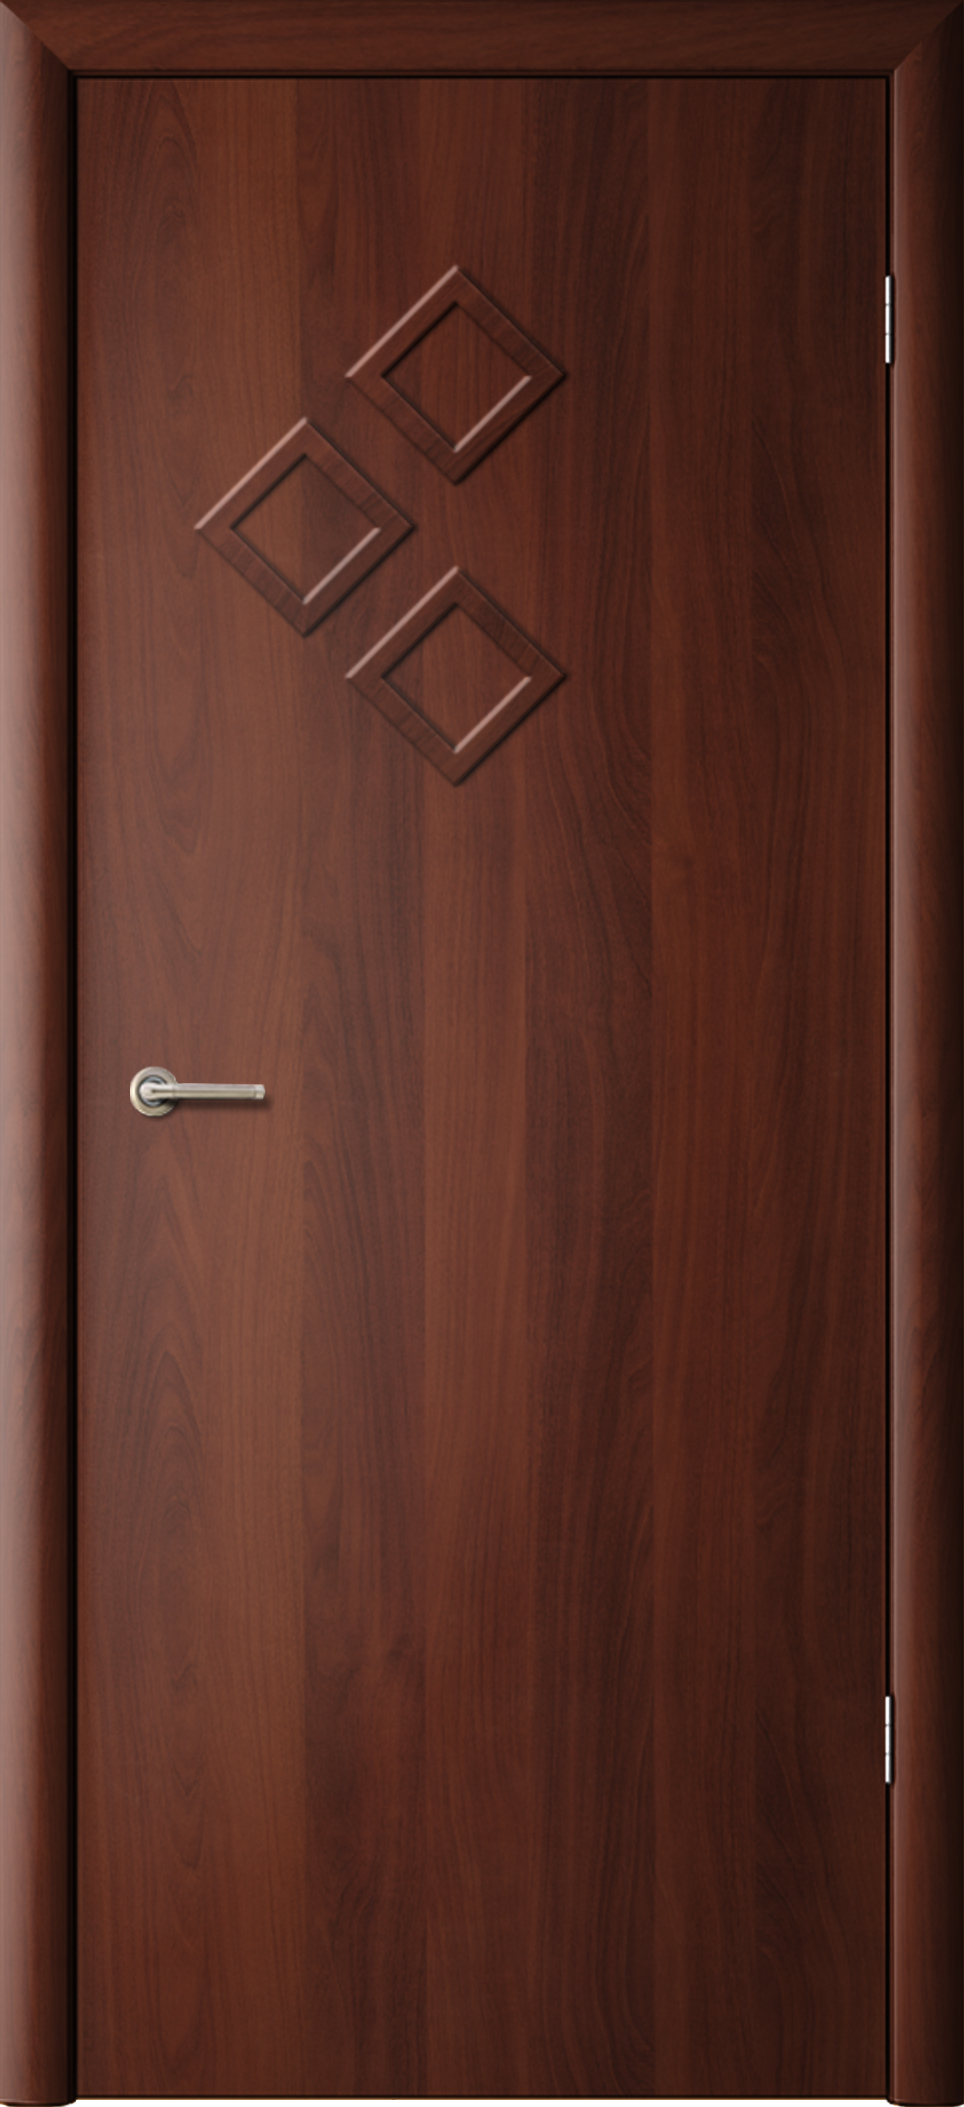 Модель дверей Стрела, итальянский орех, ламинированные. Производитель Фрегат - Большое количество вариантов цветовых решений, элементов стекол - Отличный выбор по фотоизображениям.